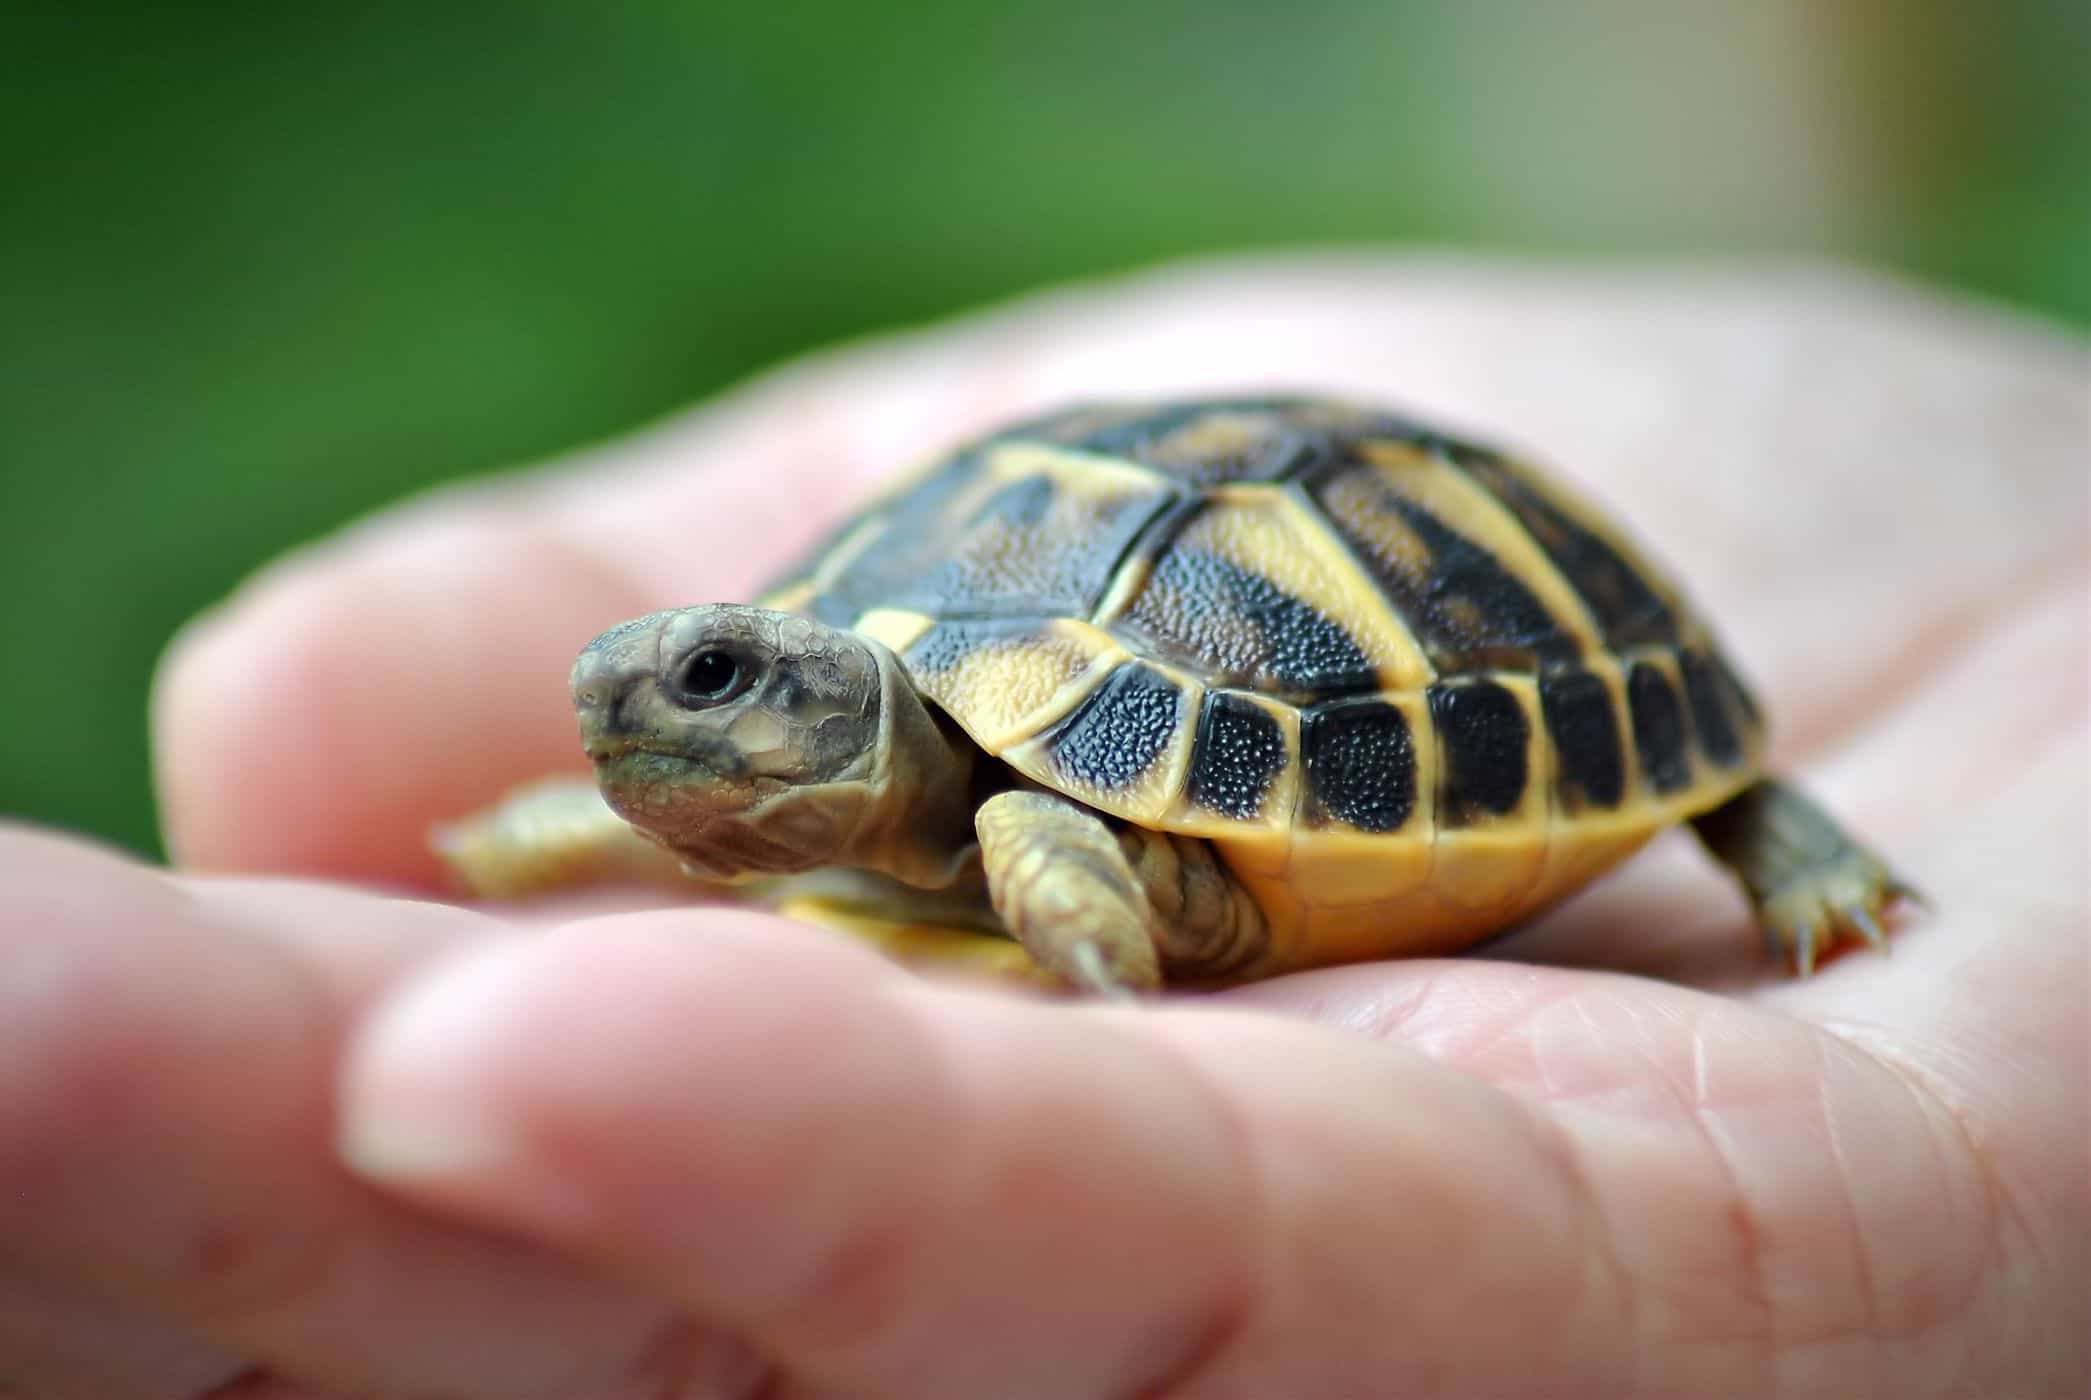 upprätthålla sköldpaddor ökar risken för salmonellainfektion